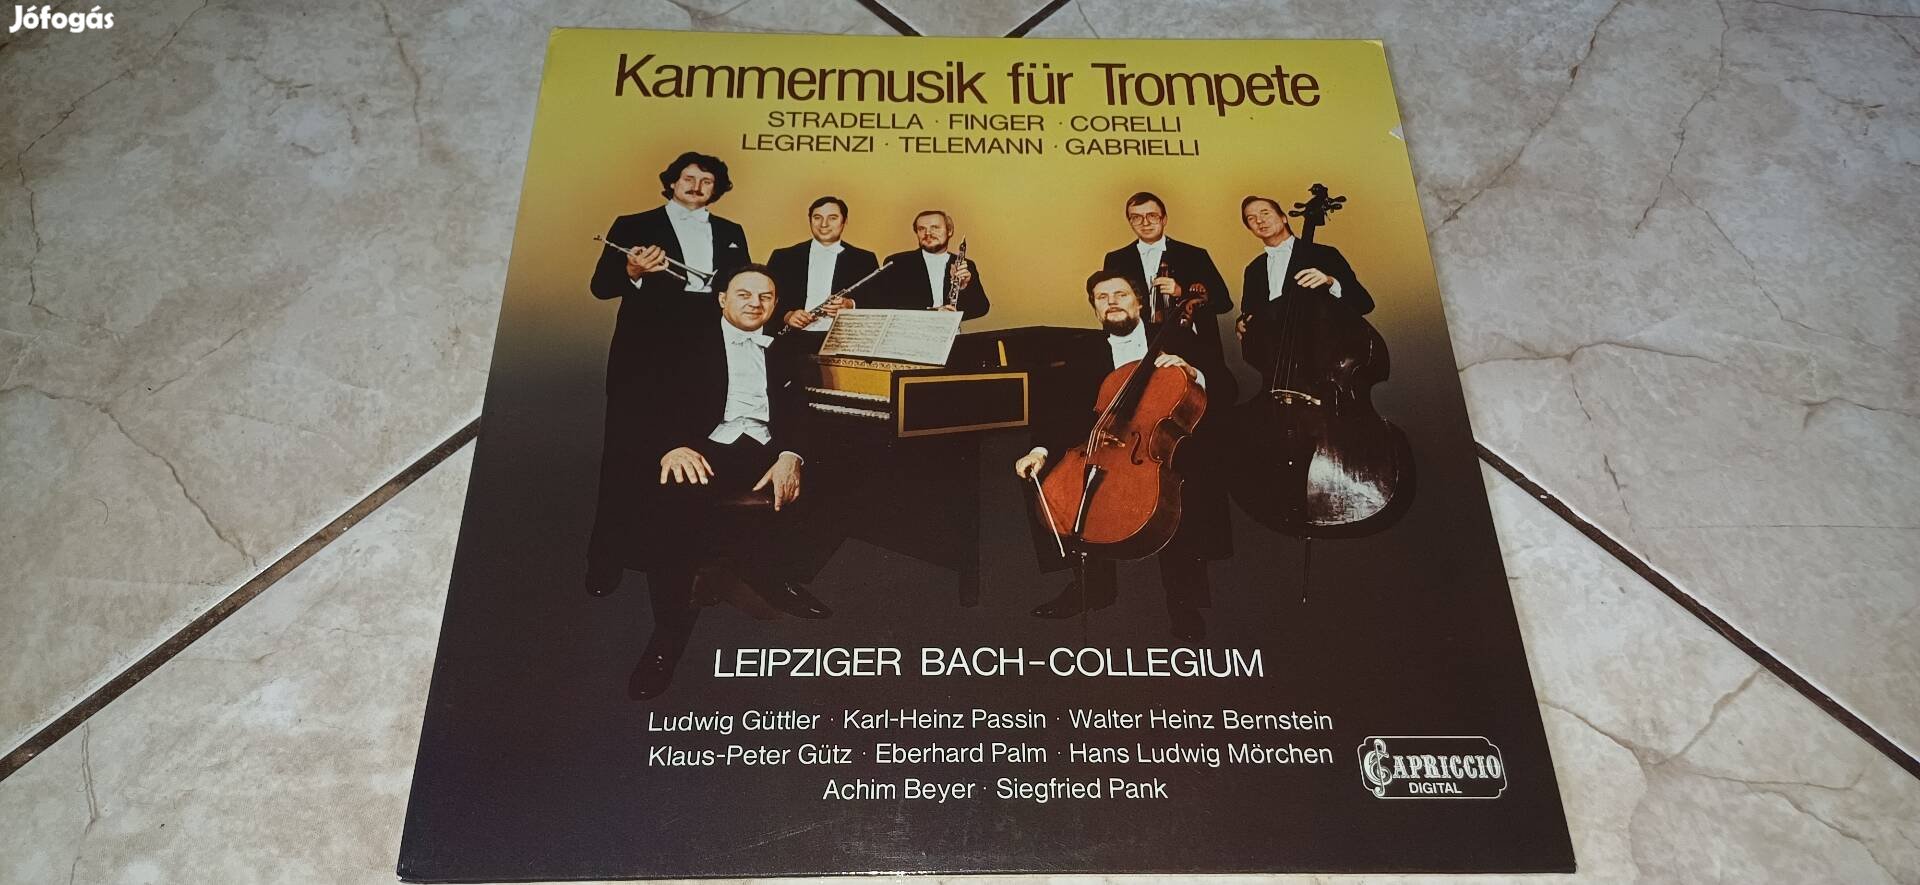 Ludwig Güttler Bach Collegium bakelit lemez